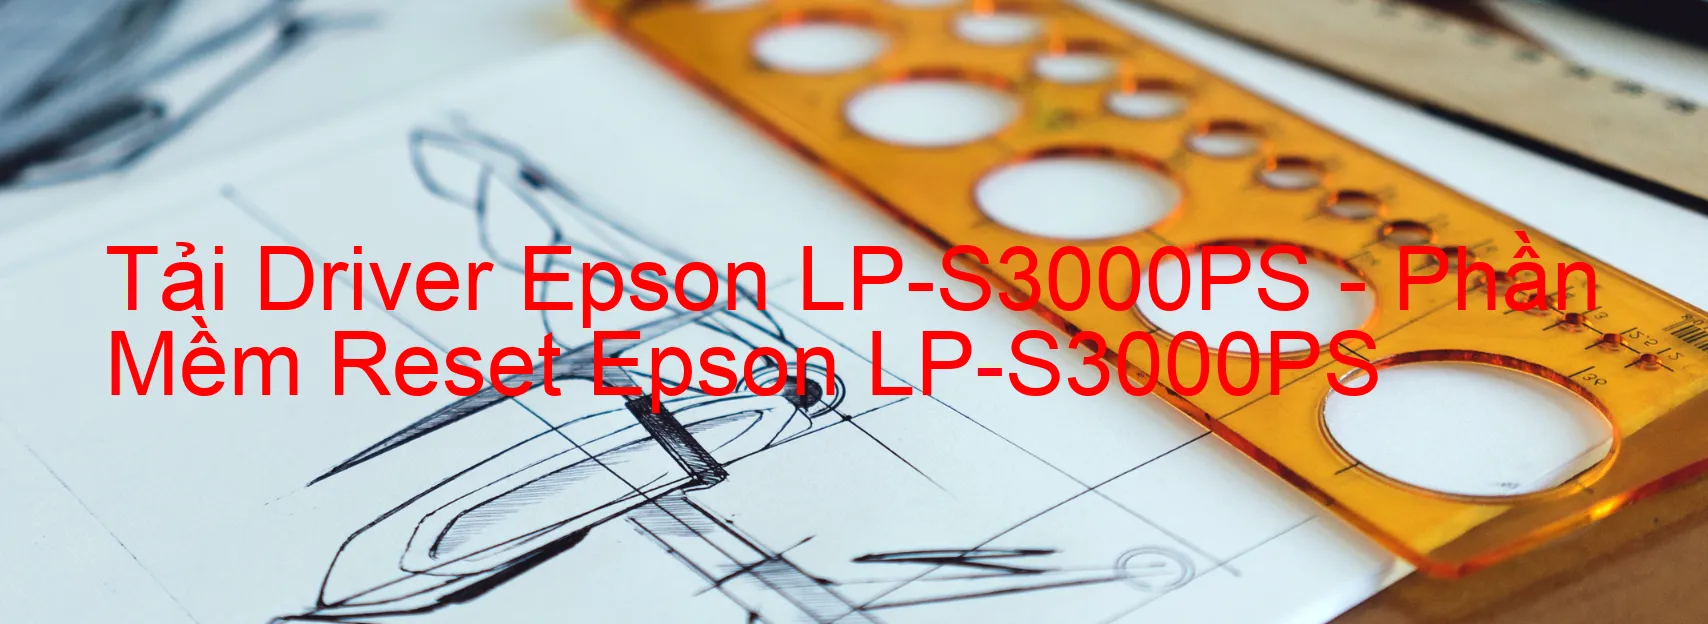 Driver Epson LP-S3000PS, Phần Mềm Reset Epson LP-S3000PS